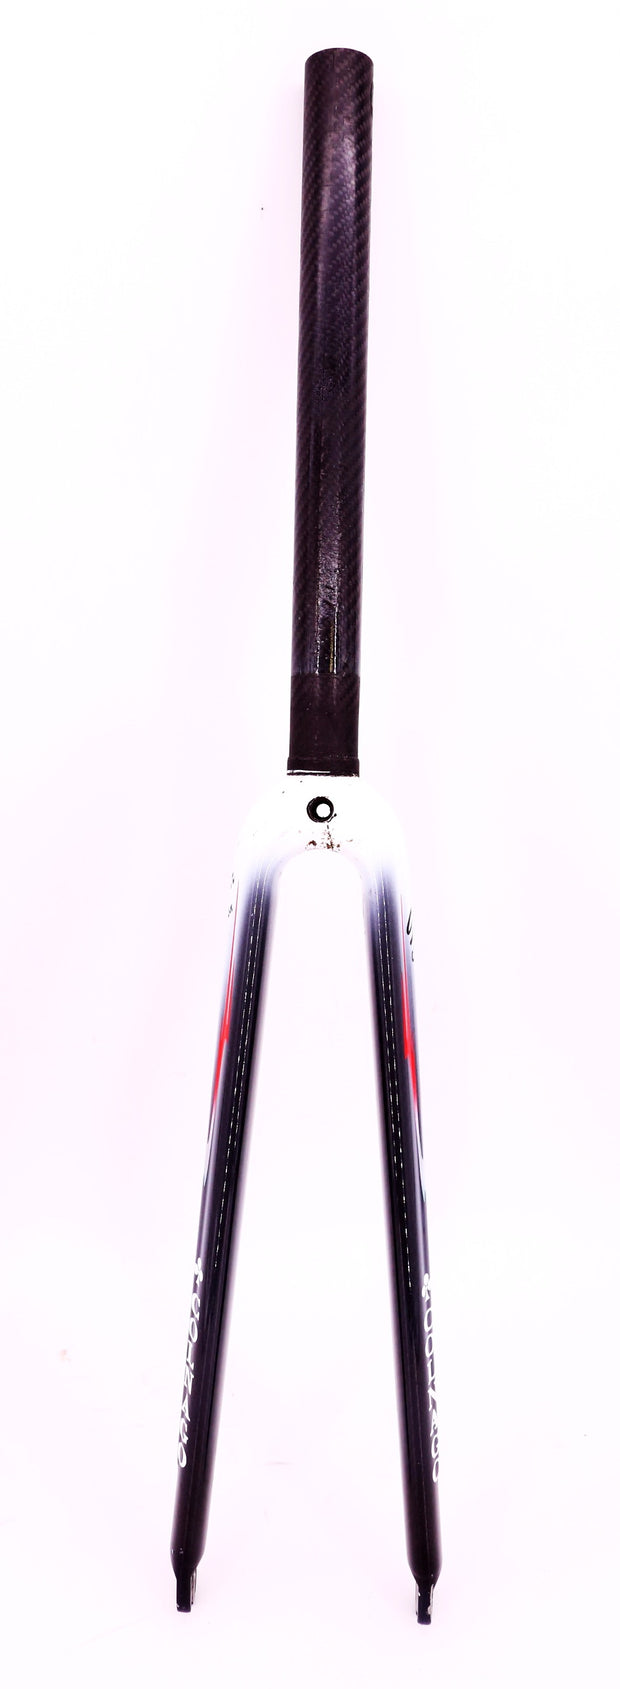 colnago star fork